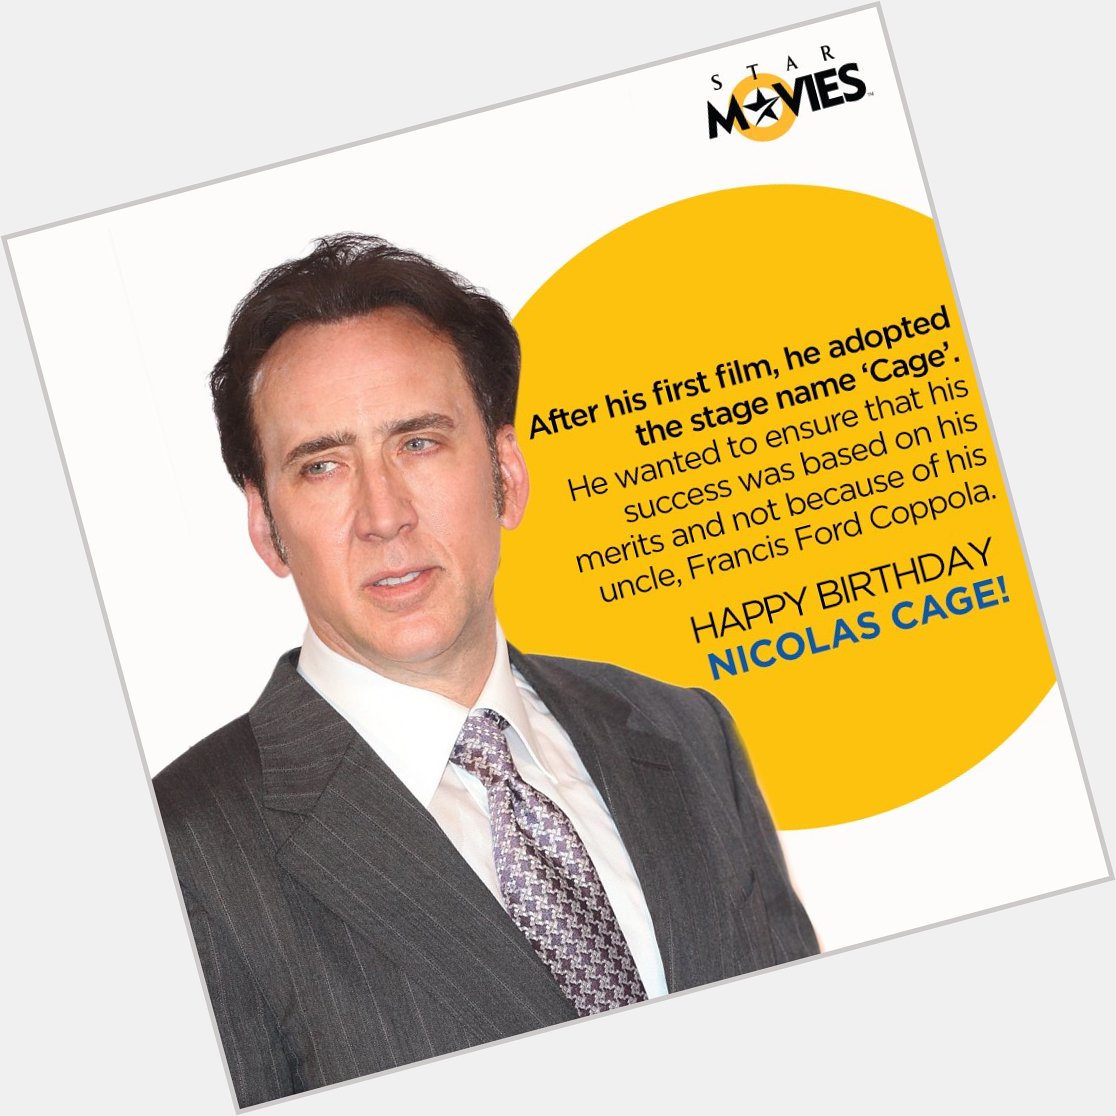 En caging performances are the secret to this actor s success! Happy birthday Nicolas Cage! 